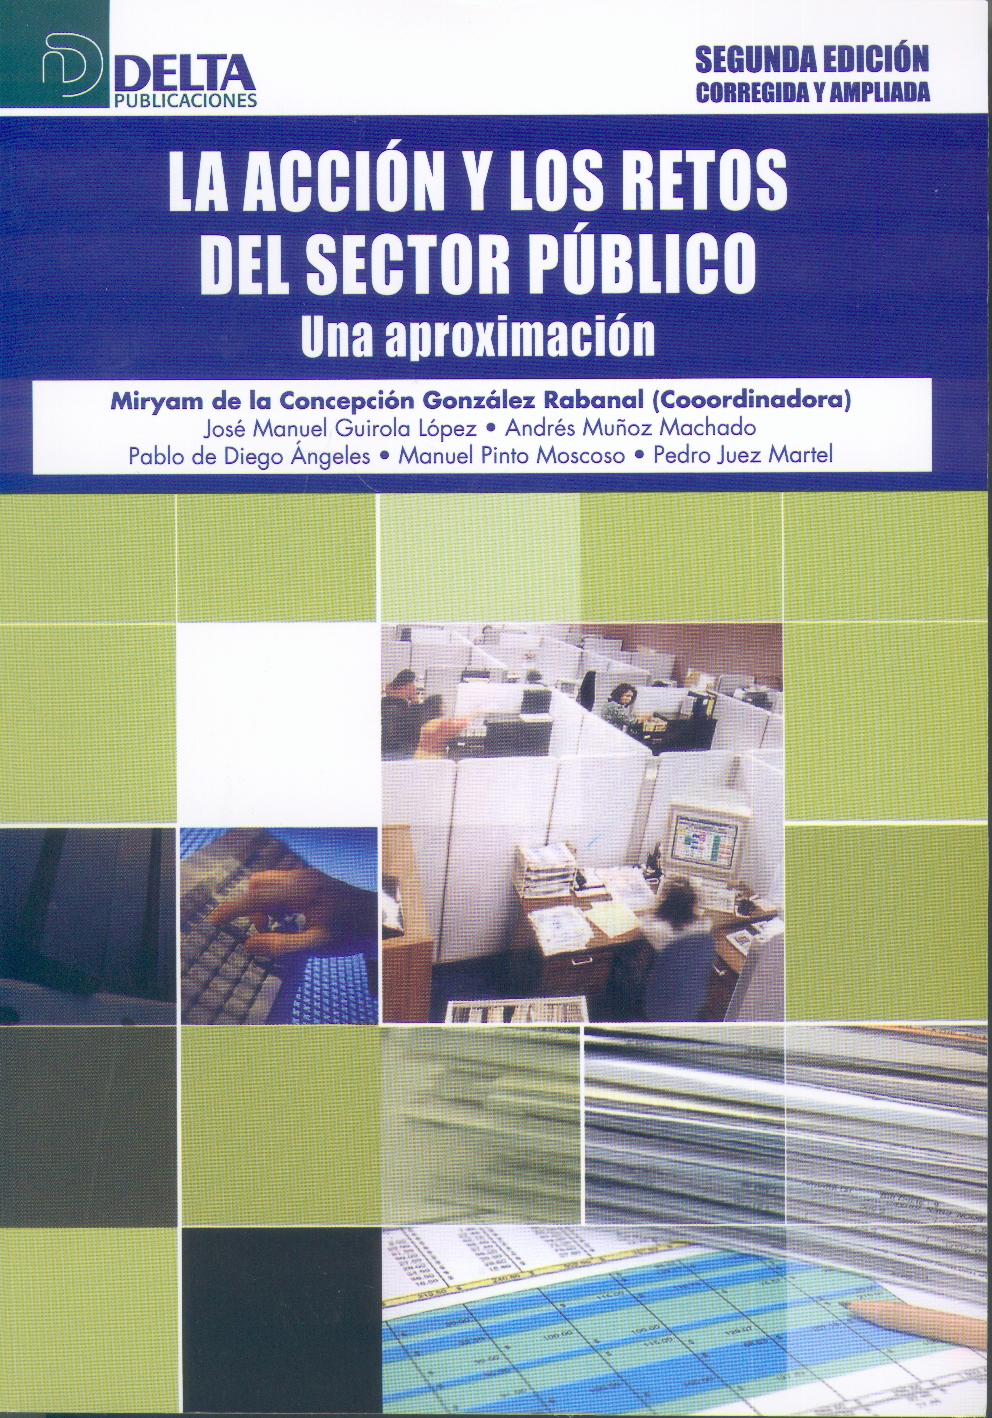 La Accion y los Retos del Sector Publico.